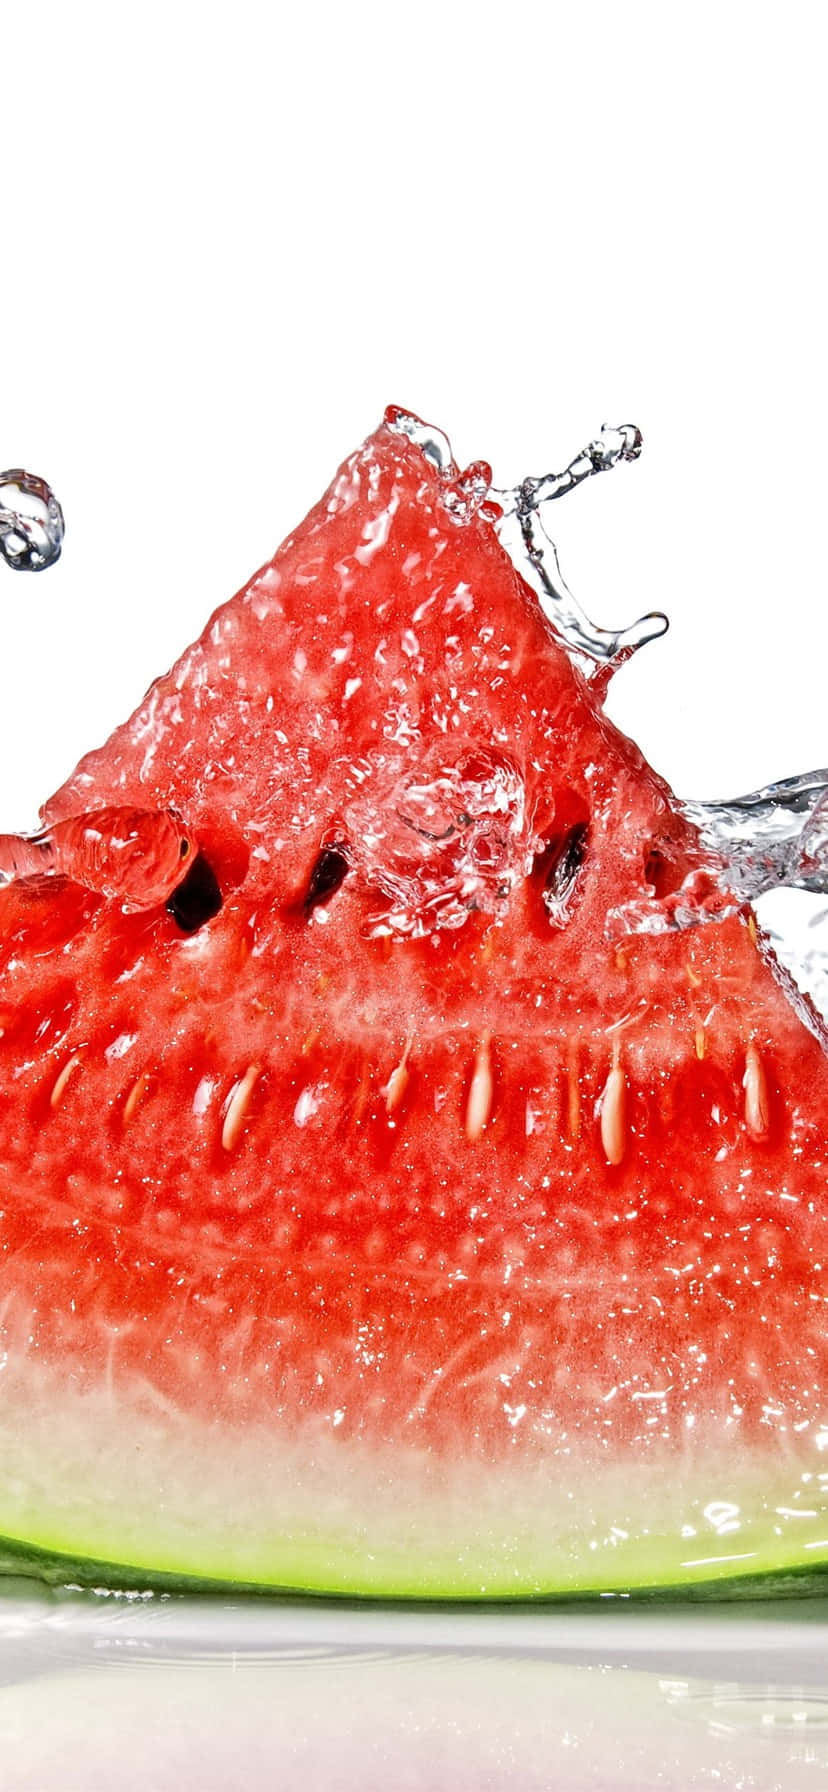 Nyd sødmen af sommeren med en vandmelon Iphone baggrund. Wallpaper